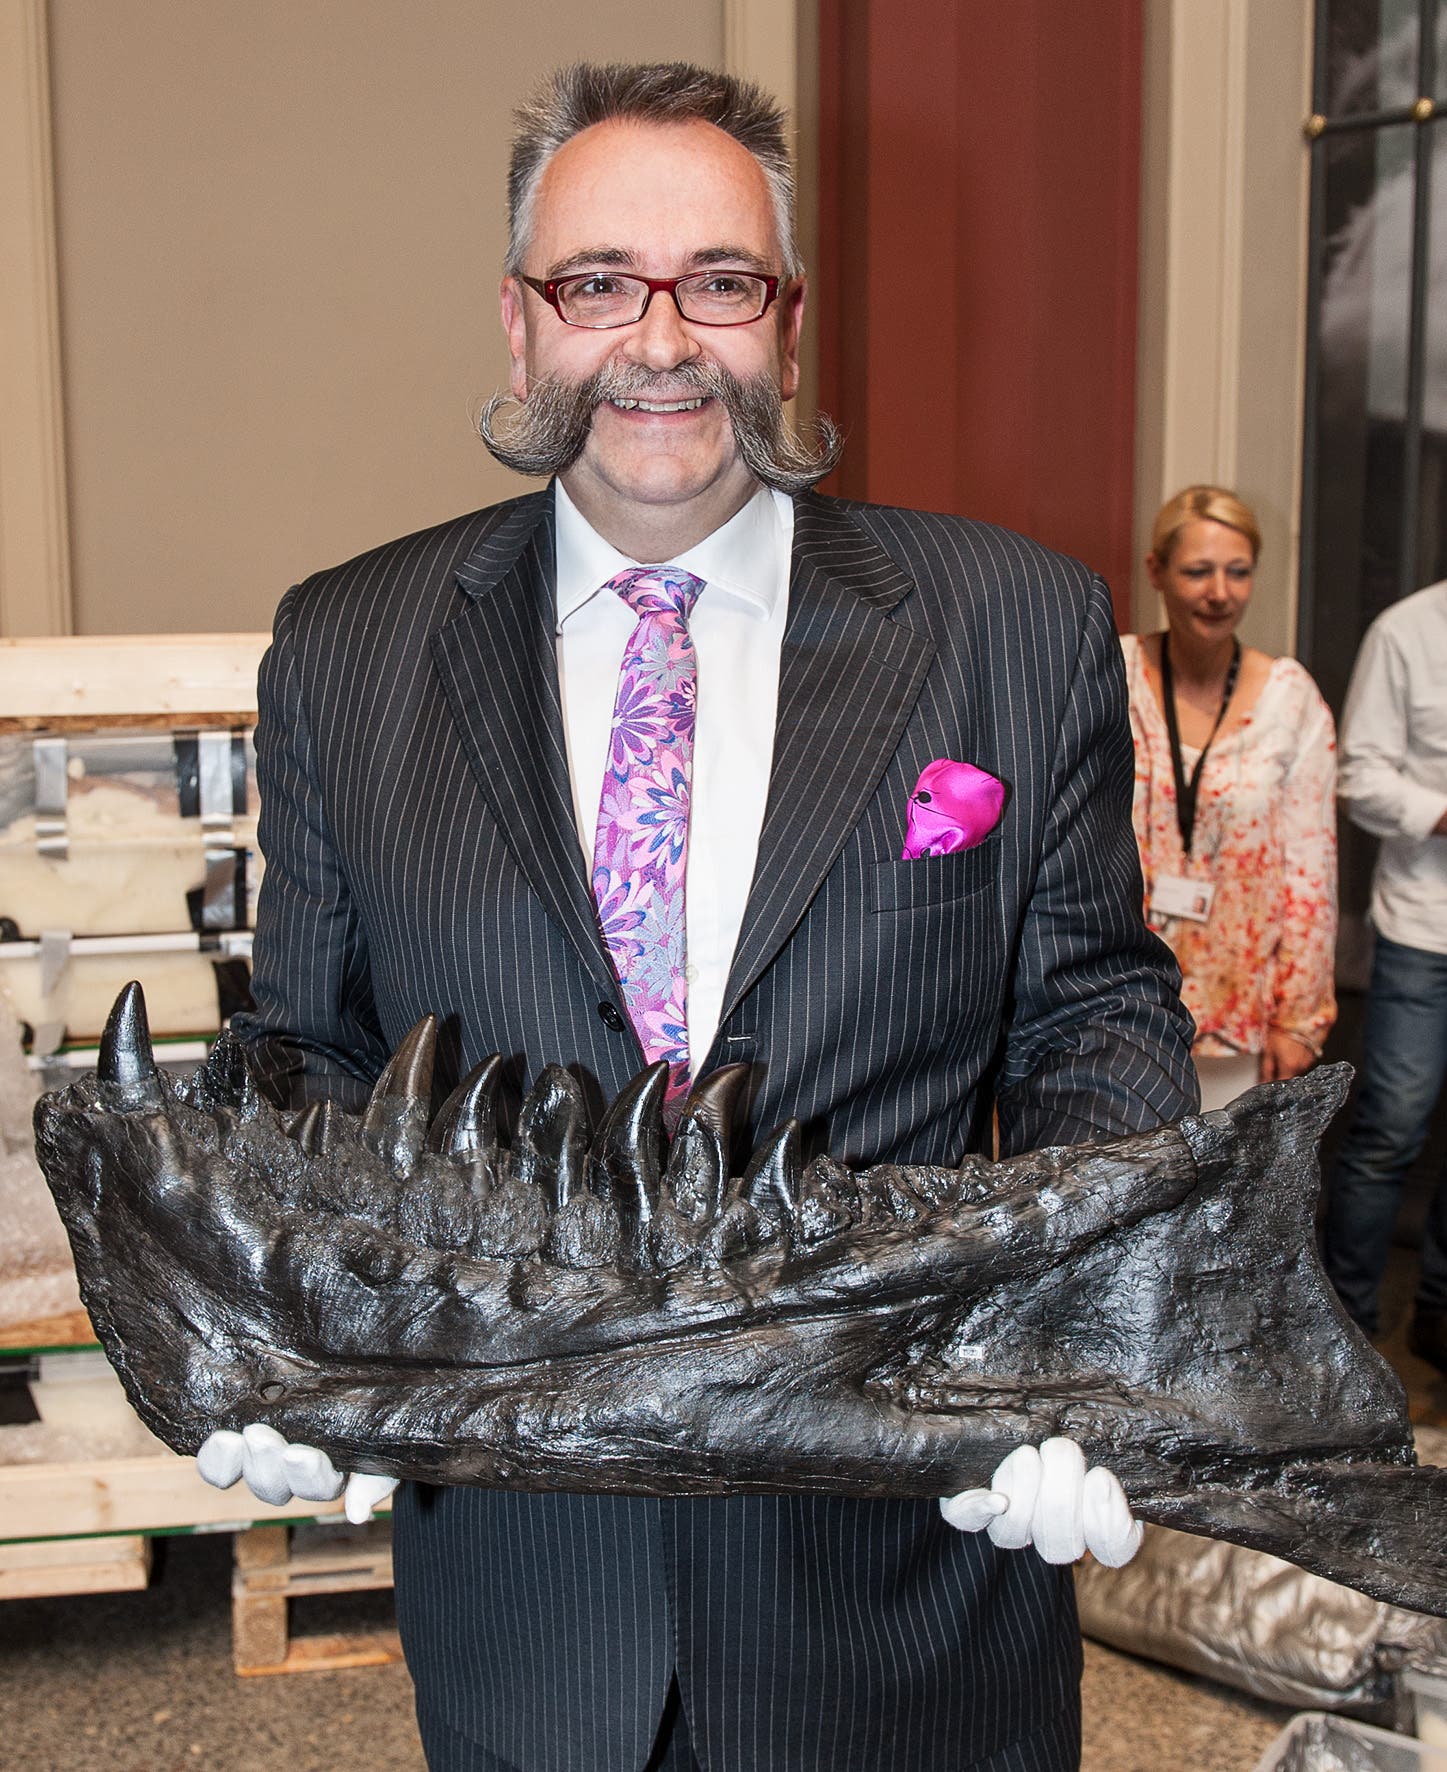 Persönliche Sympathien brachten den Tyrannosaurier nach Berlin: Johannes Vogel, Generaldirektor des Museums für Naturkunde Berlin, präsentiert einen Kieferknochen.